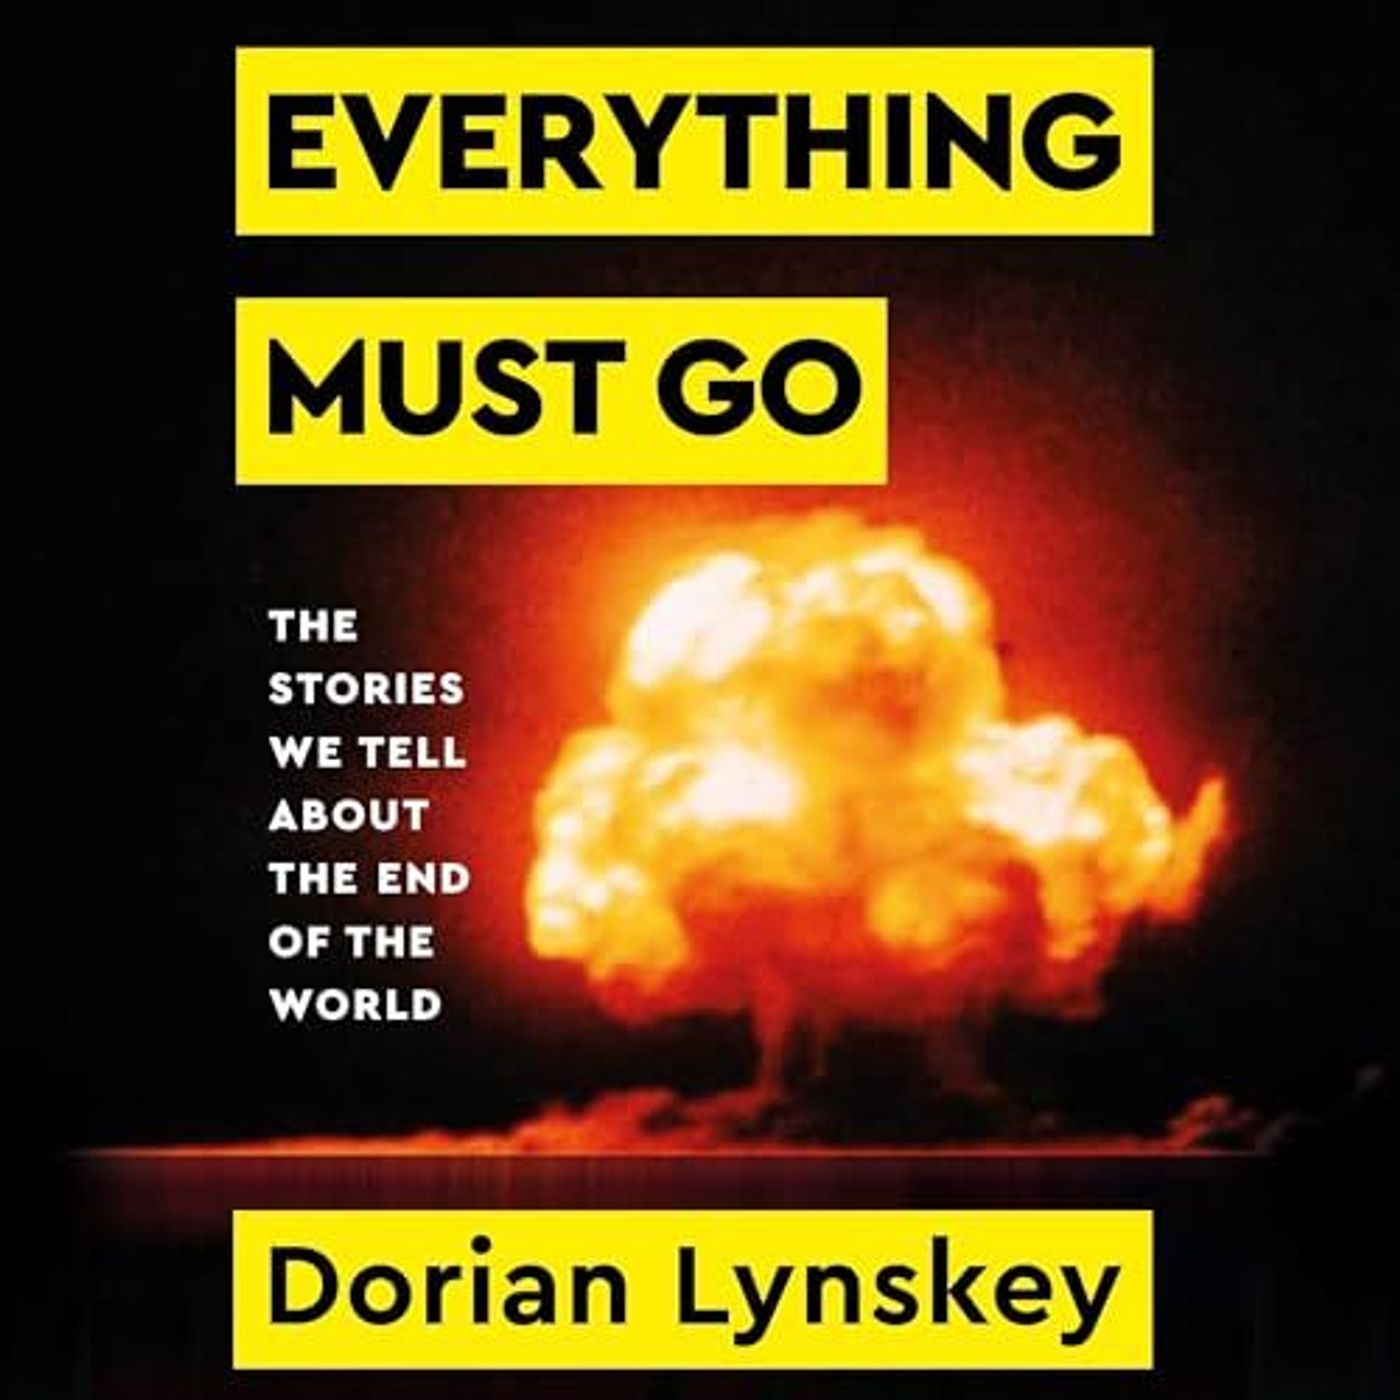 The Book Club: Dorian Lynskey